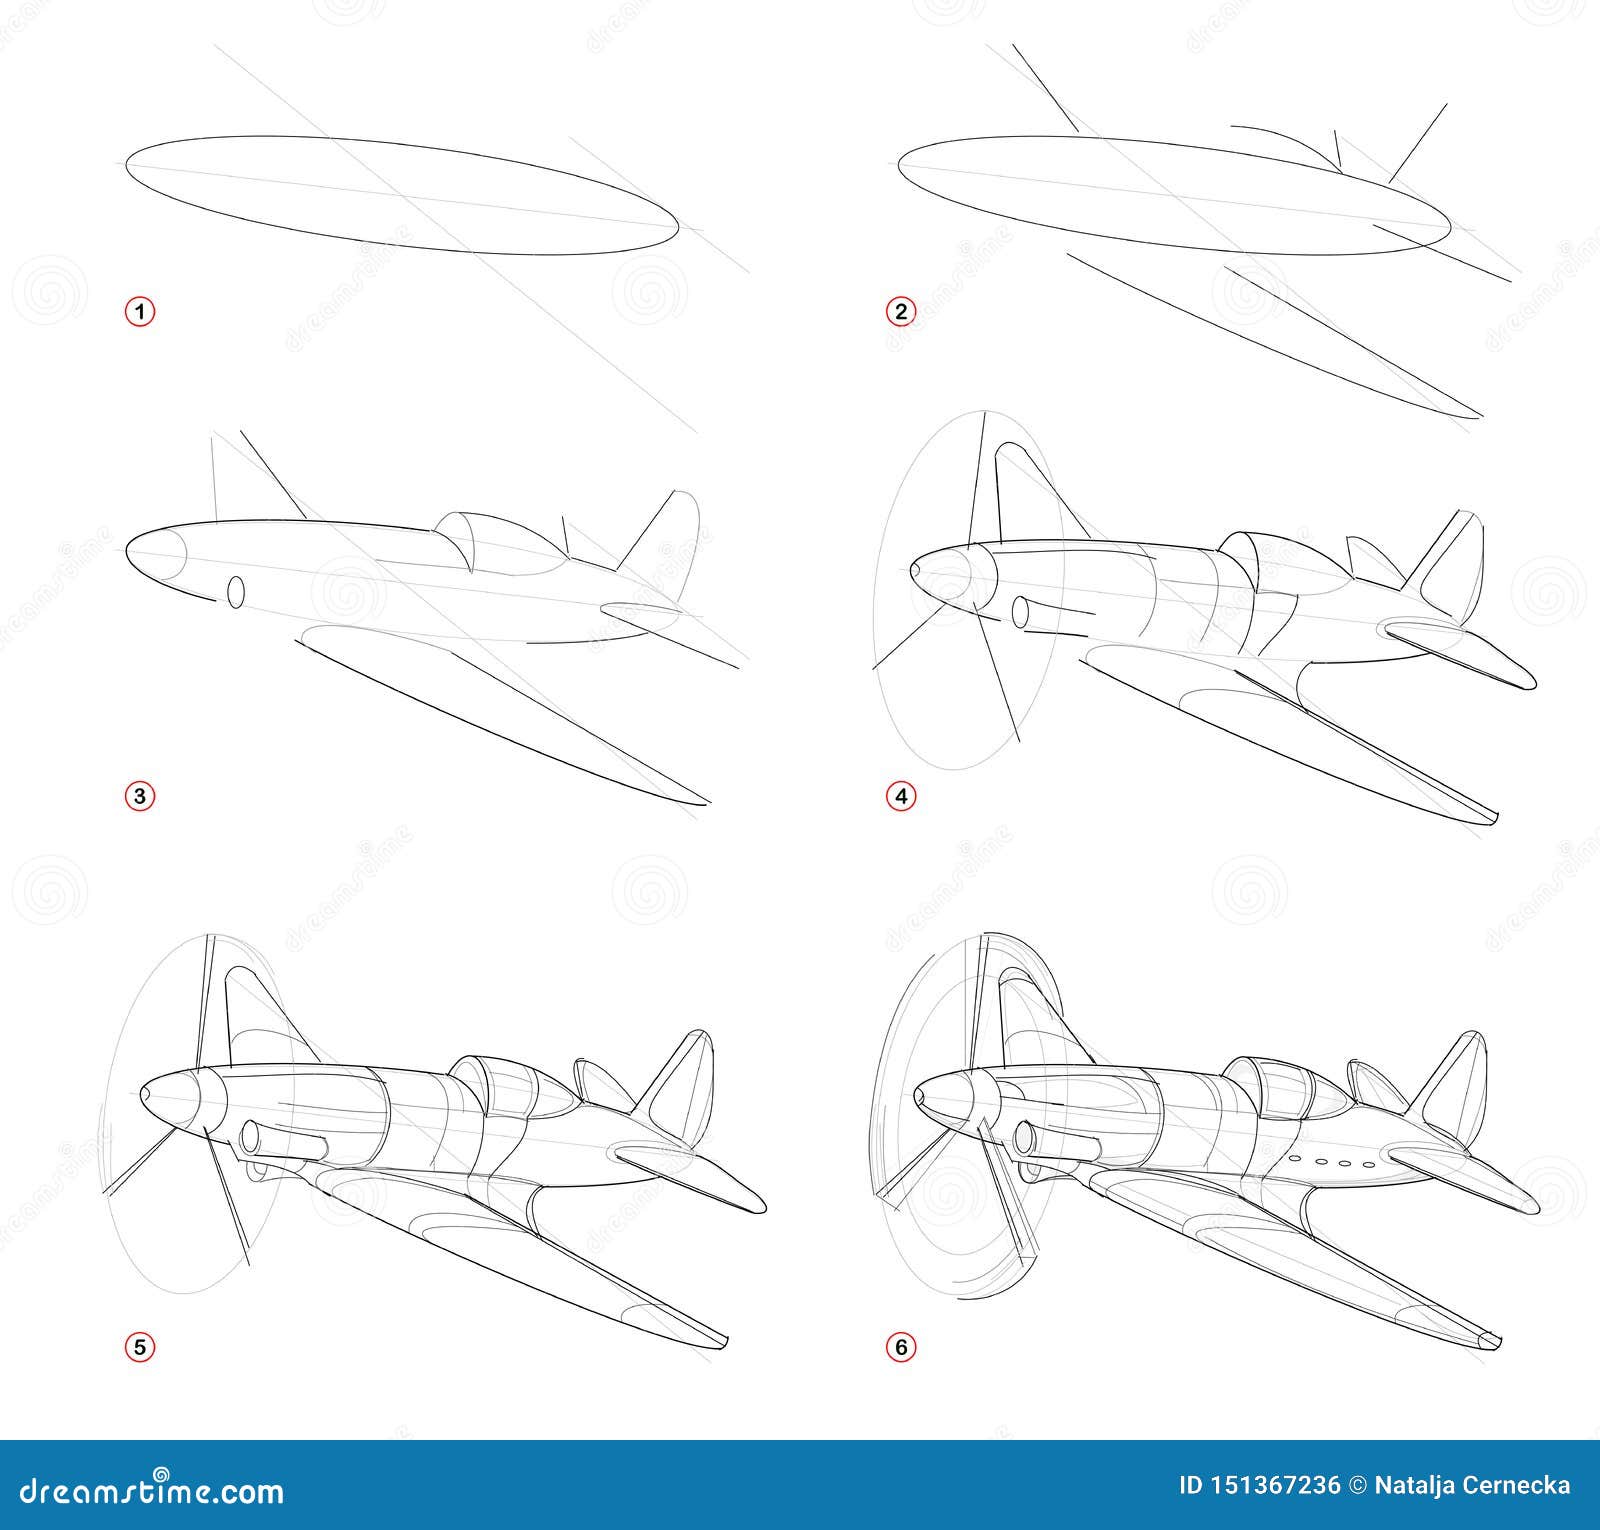 Поэтапные рисунки немецких самолётов